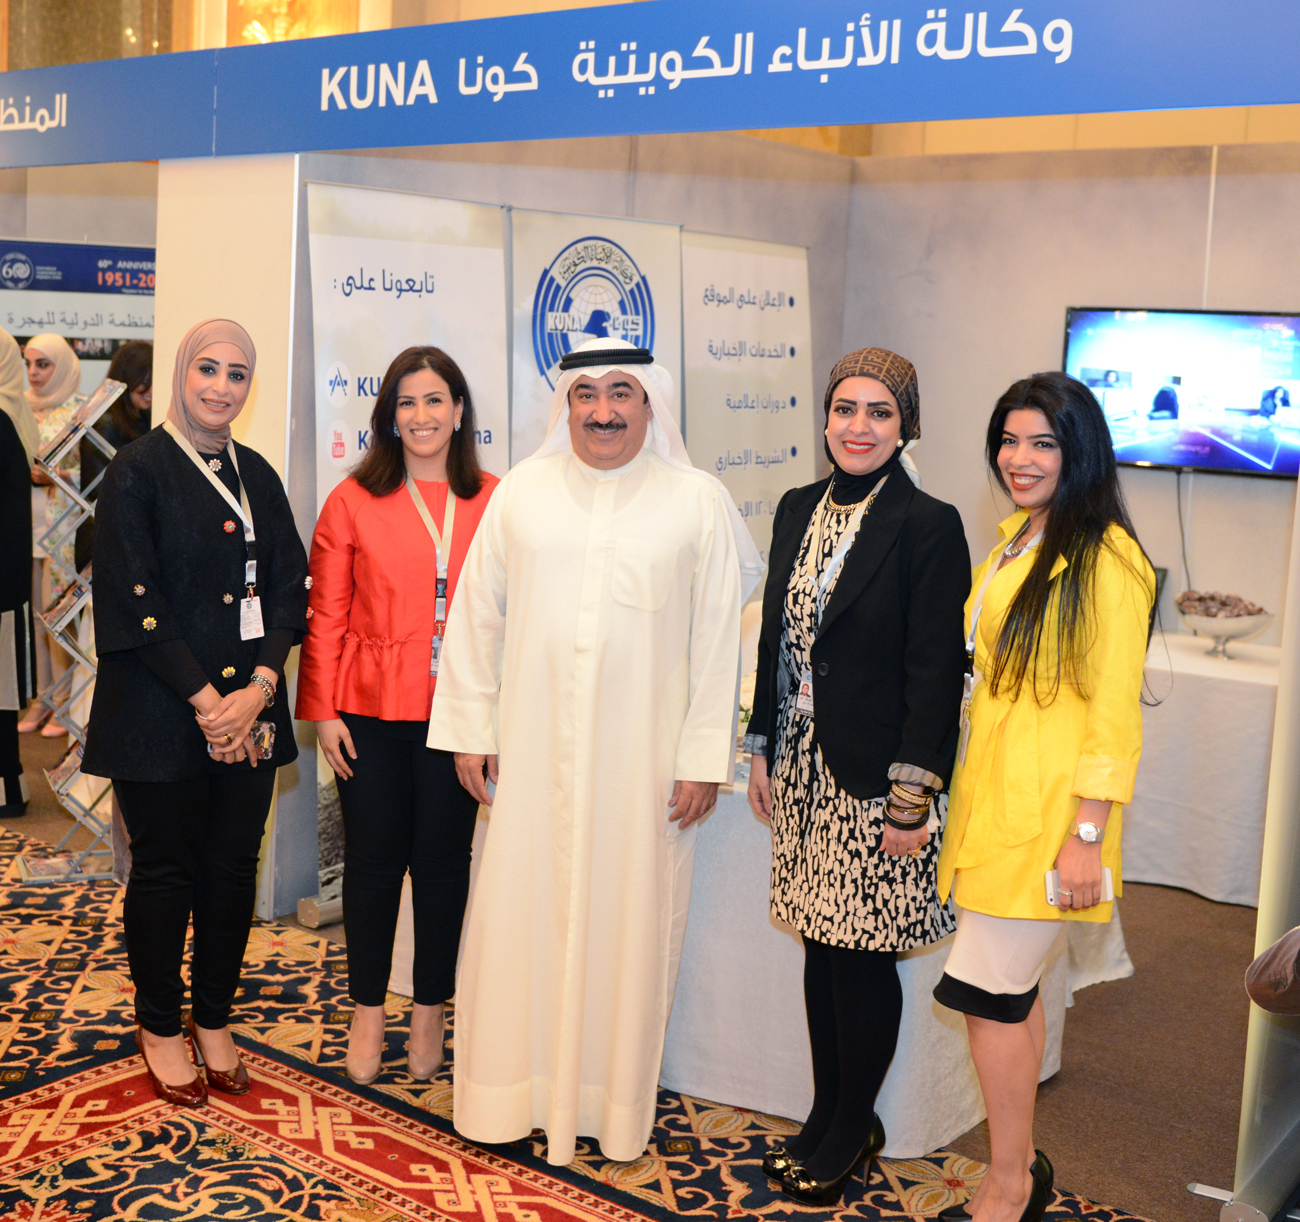 Kuwait News Agency ( KUNA )